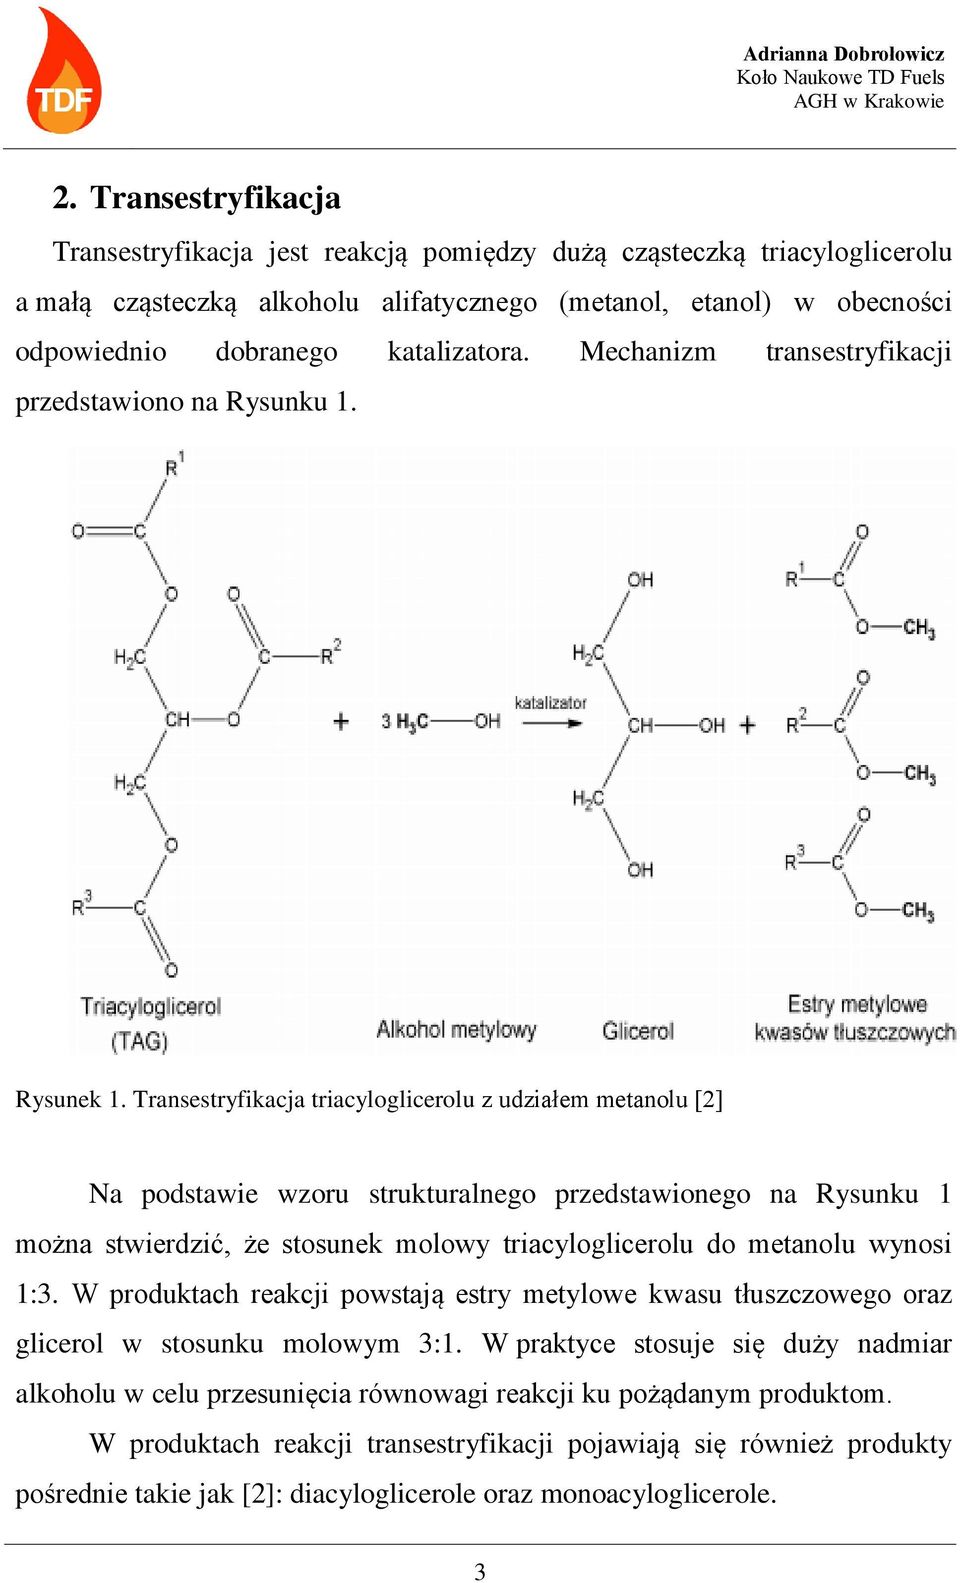 Transestryfikacja triacyloglicerolu z udziałem metanolu [2] Na podstawie wzoru strukturalnego przedstawionego na Rysunku 1 można stwierdzić, że stosunek molowy triacyloglicerolu do metanolu wynosi